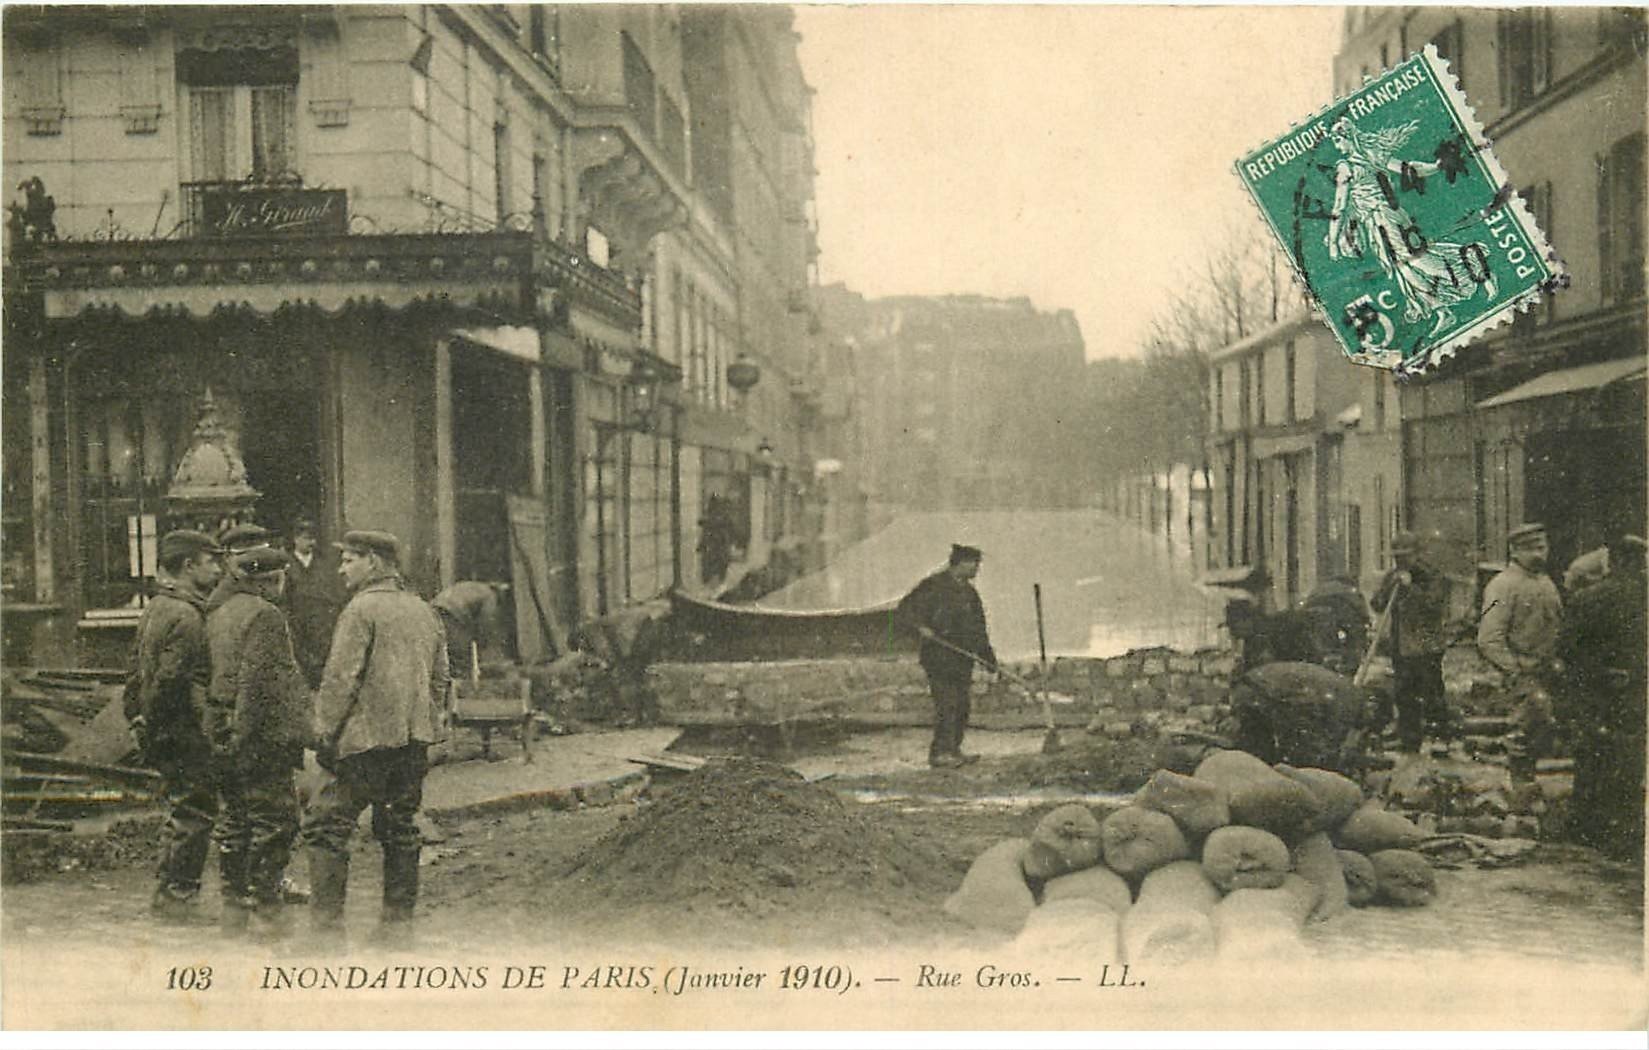 INONDATION ET CRUE DE PARIS 1910. Rue Gros digue de fortune